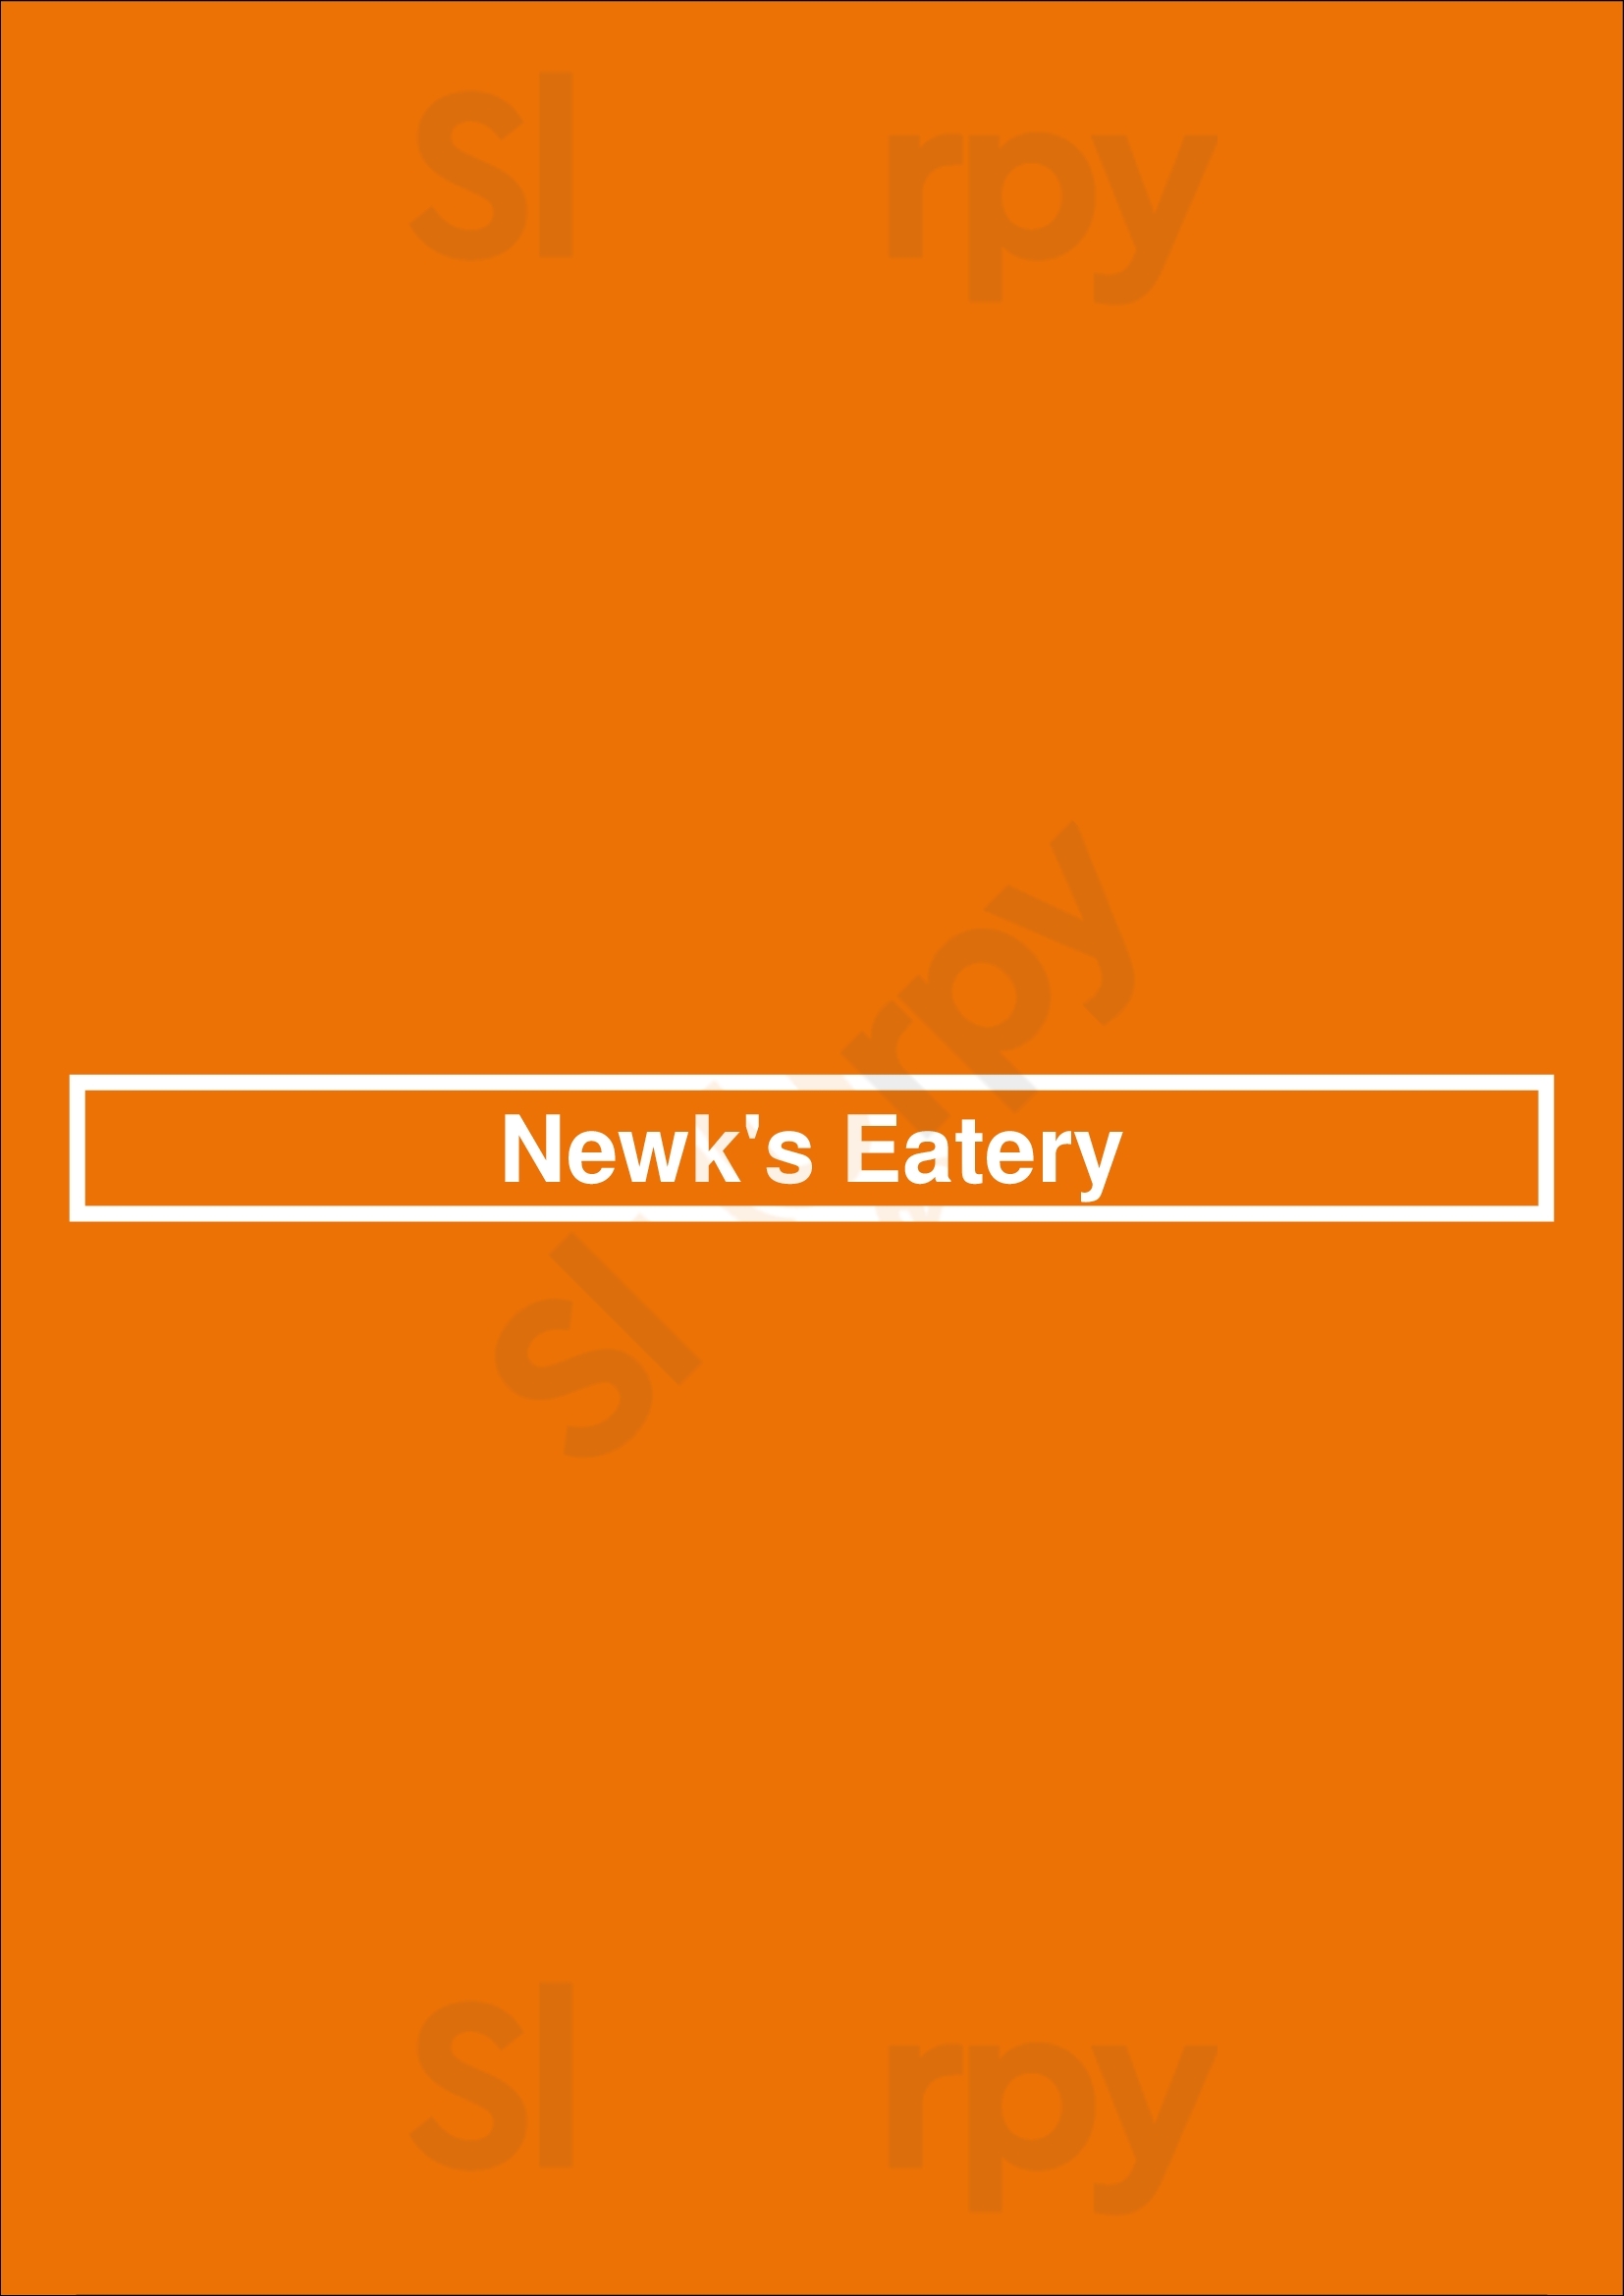 Newk's Eatery Atlanta Menu - 1